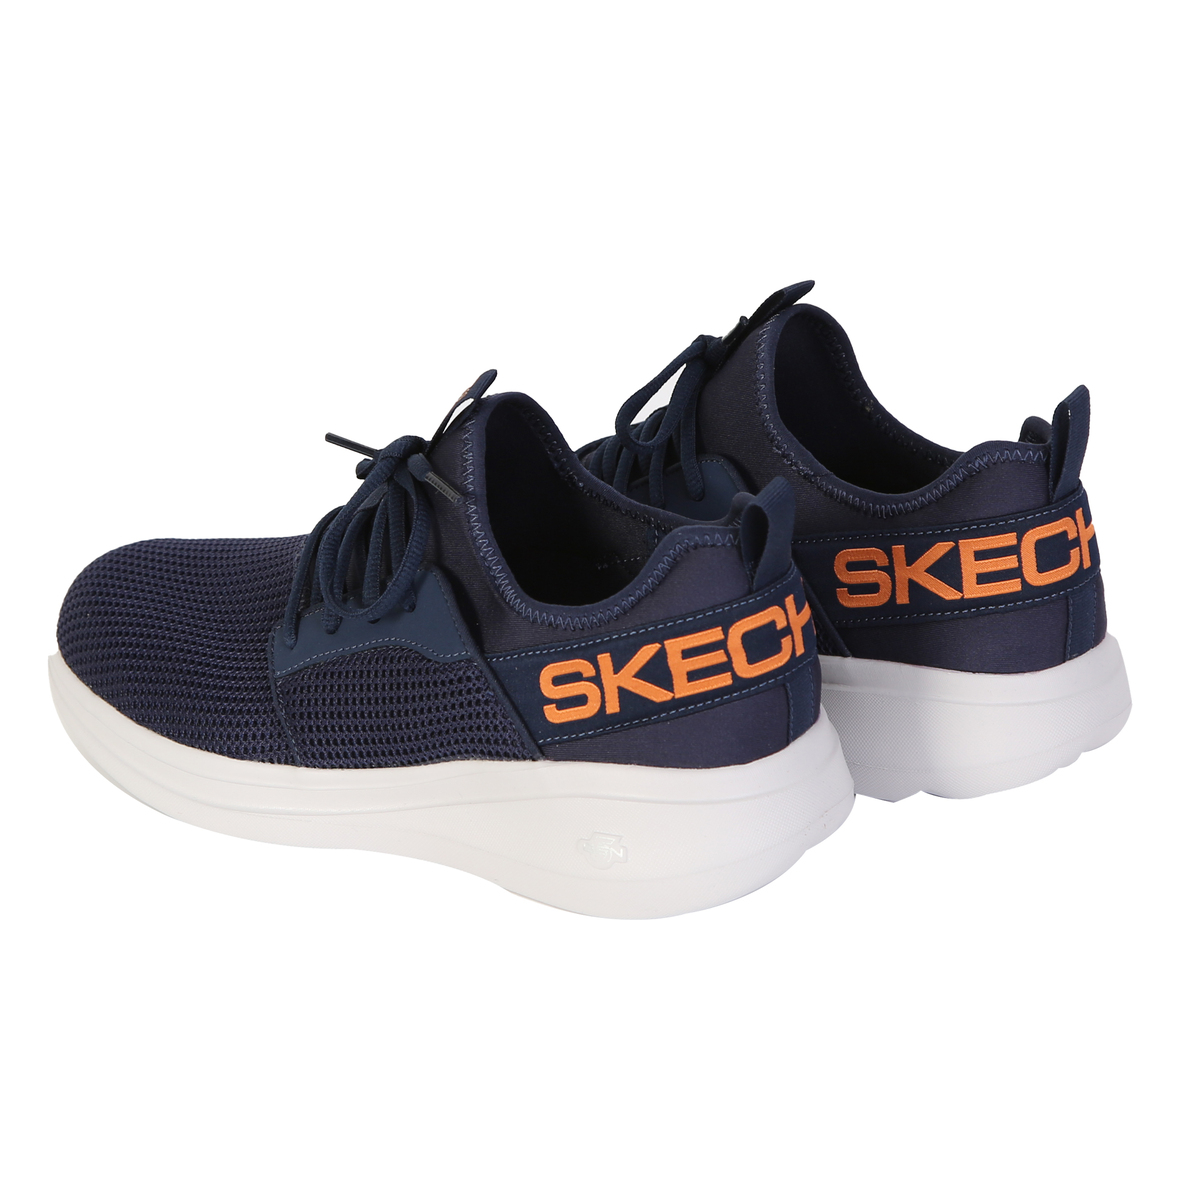 Skechers Men's Sport Shoes 55103 Navy Orange, 41